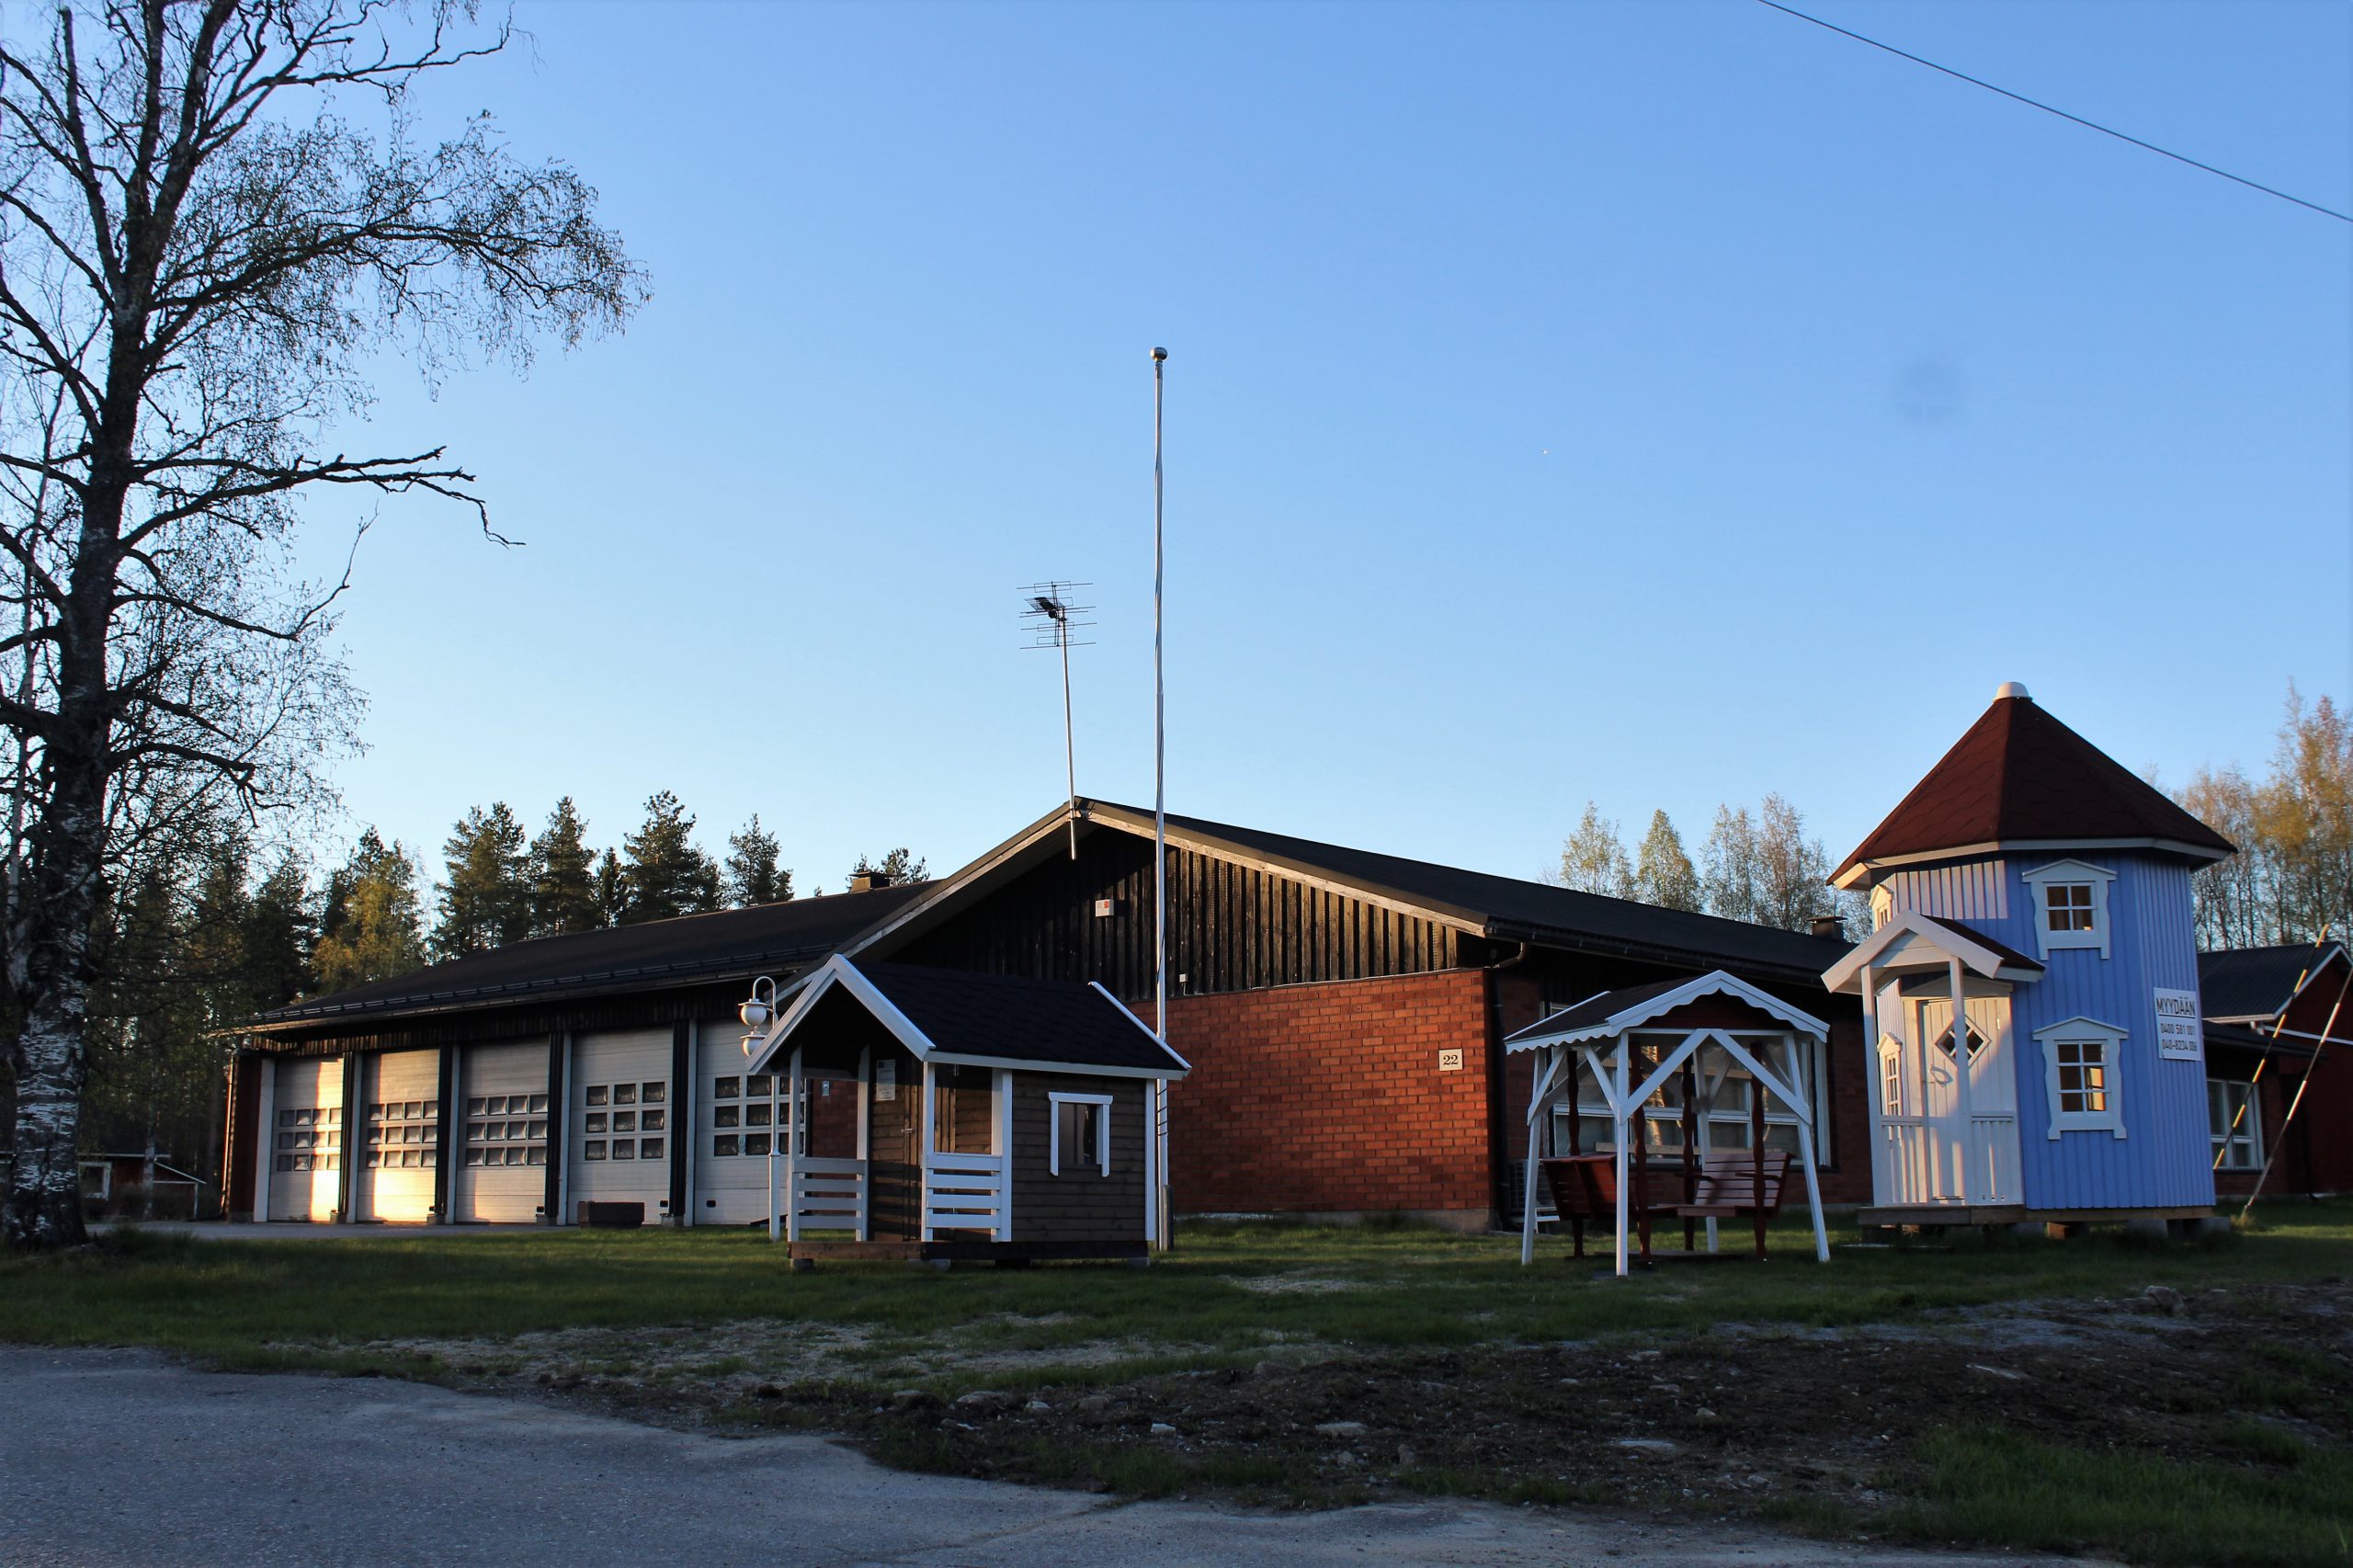 Vanha palolaitos takaisin Evijärven kunnalle - Järviseudun sanomat